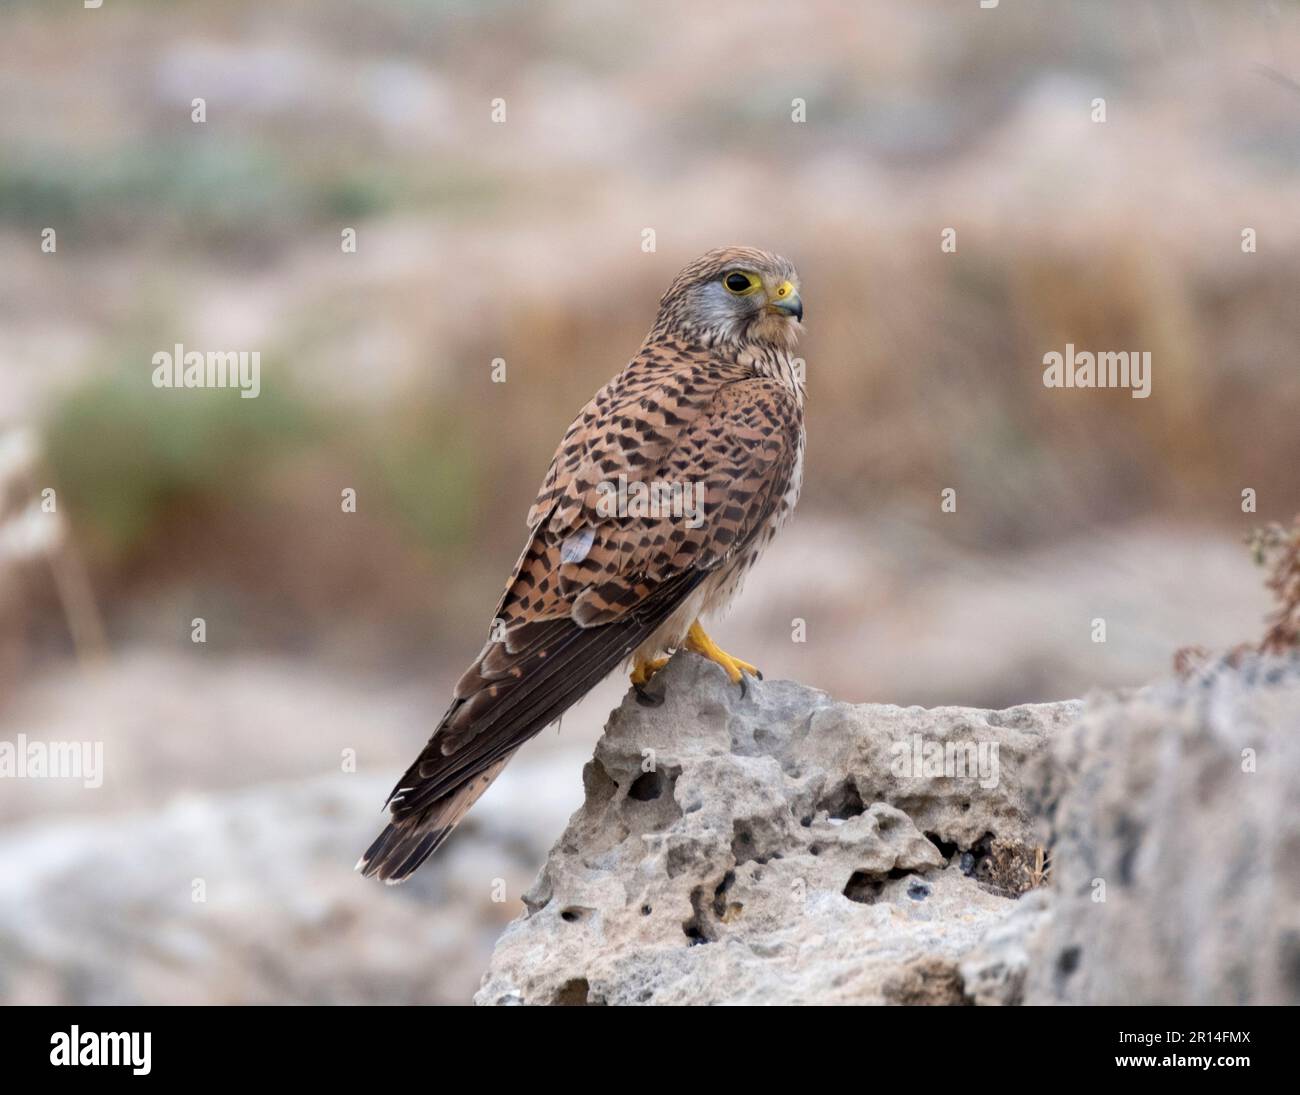 Cernícalo hembra (falco tinnunculus) encaramado en un afloramiento rocoso, Paphos, Chipre. Foto de stock